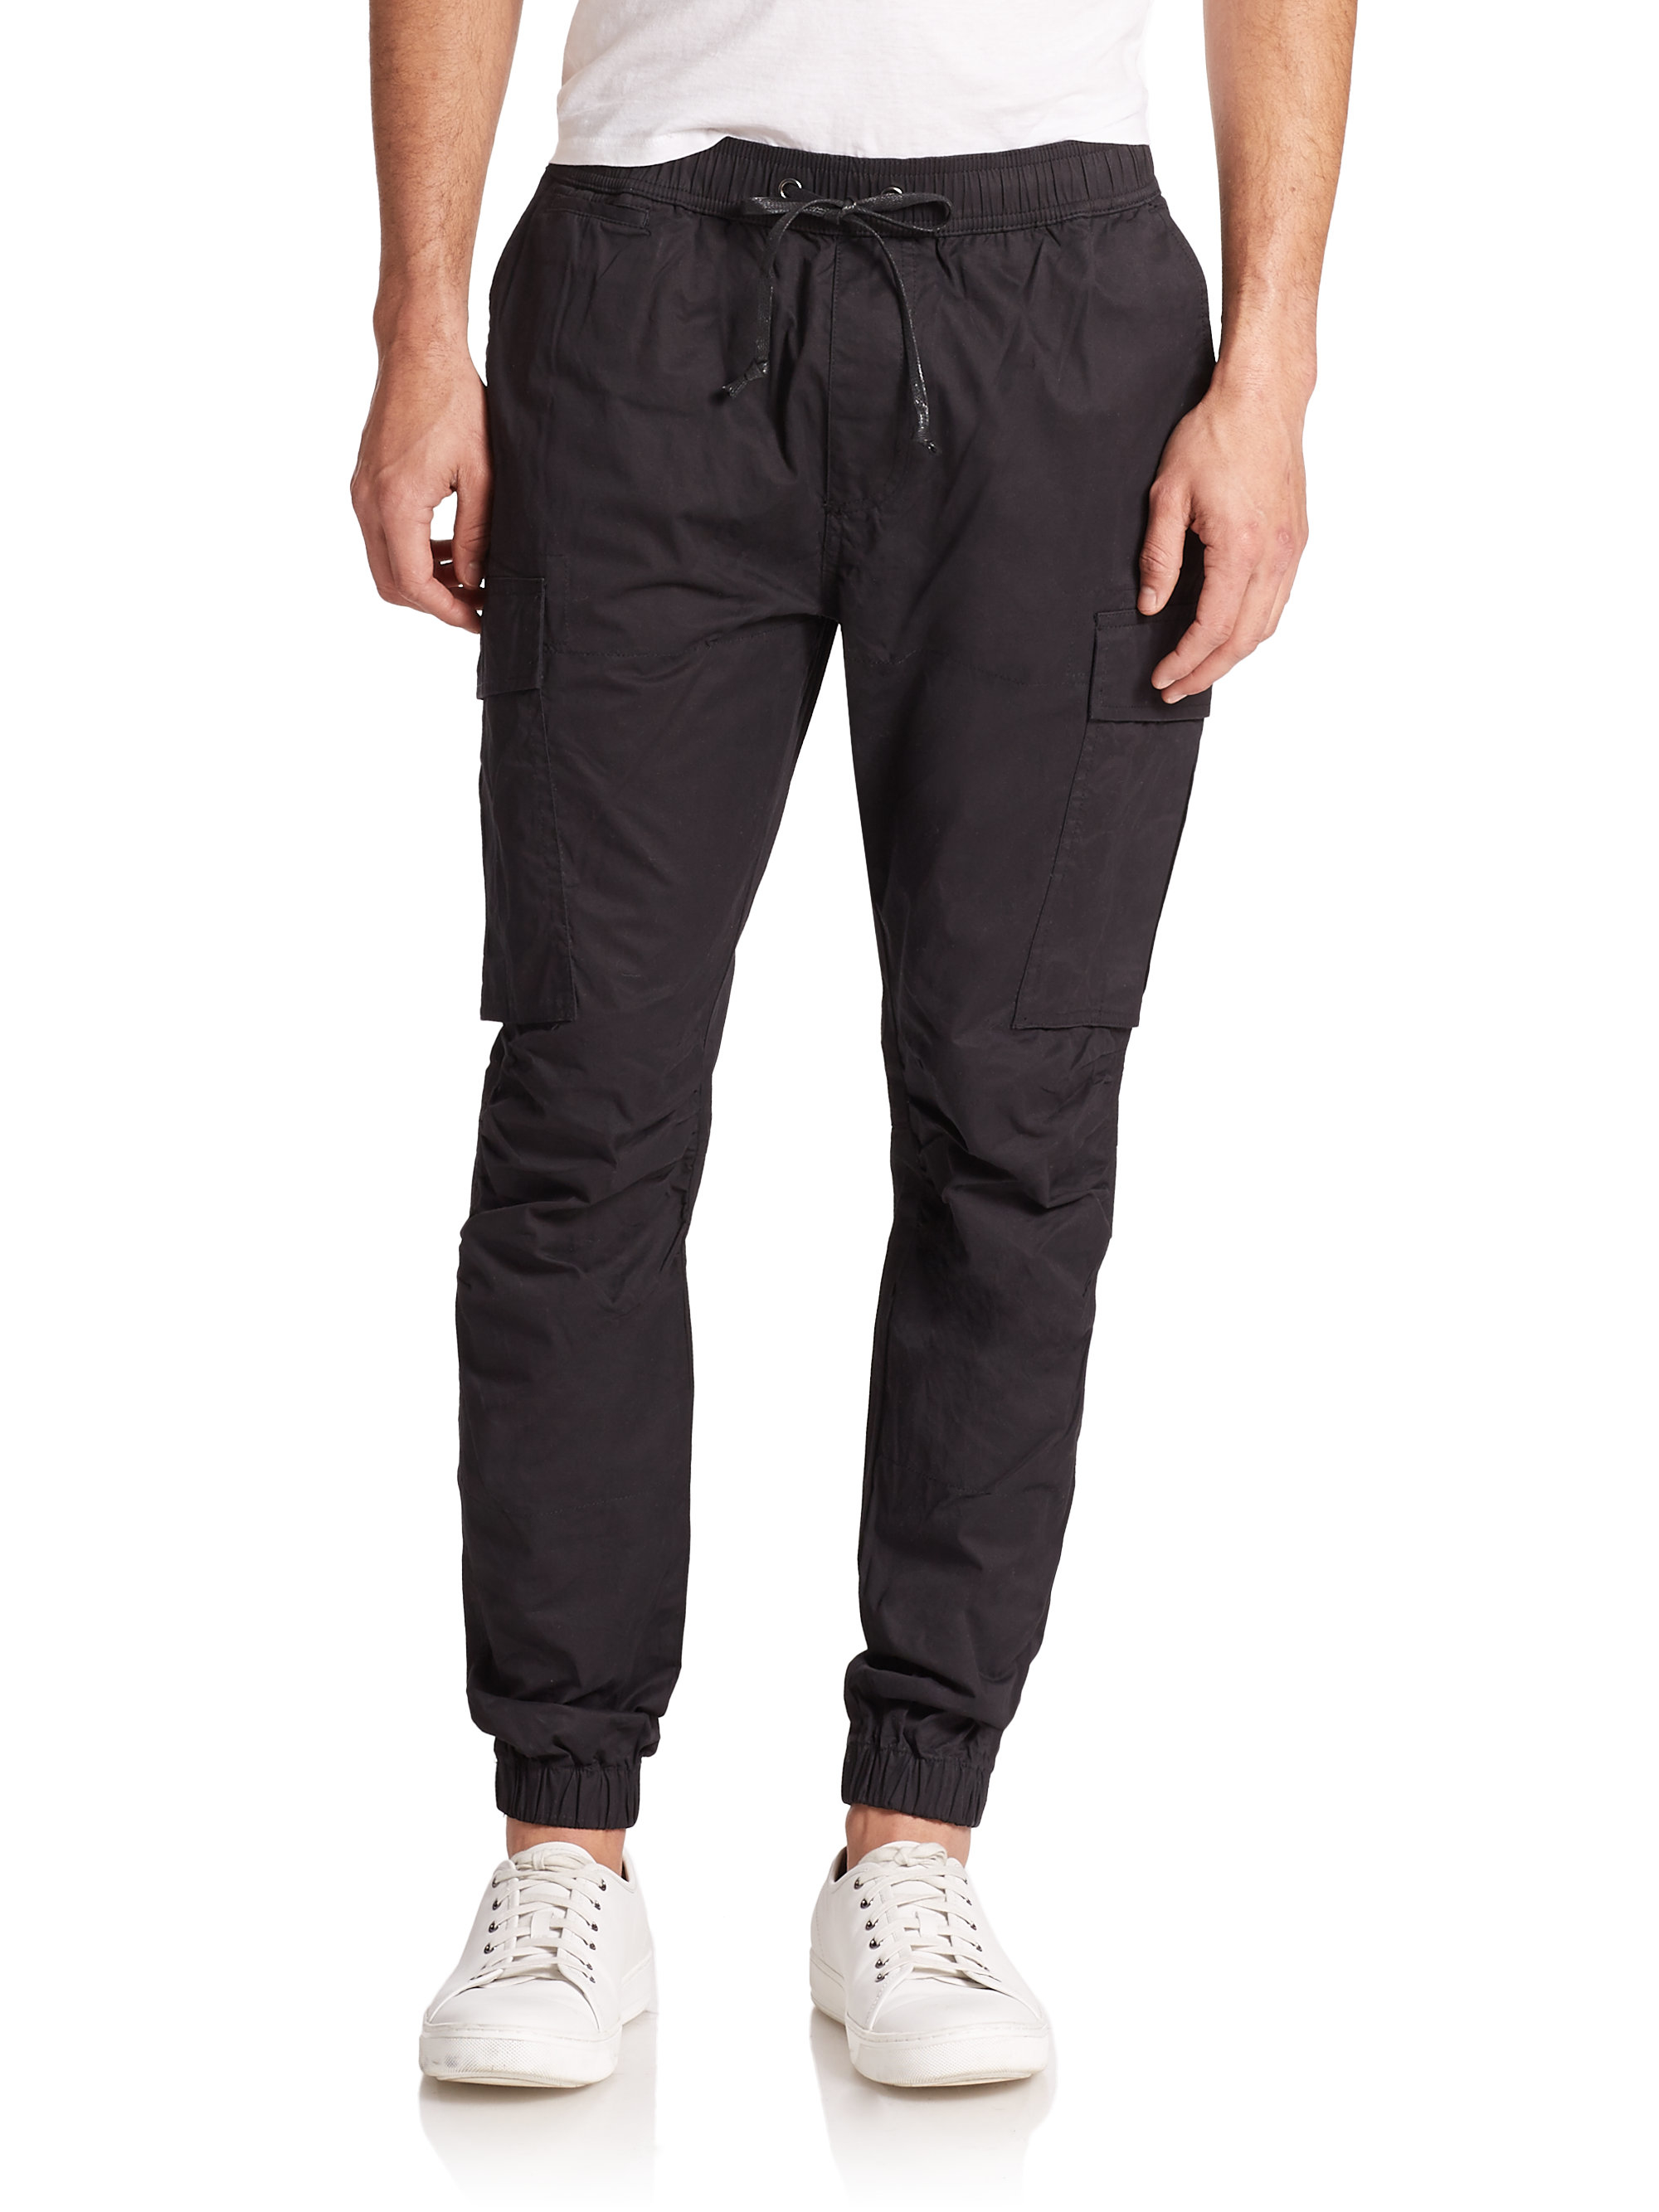 Hudson Jeans Cotton Gunner Drawstring Cargo Pants in Black for Men - Lyst